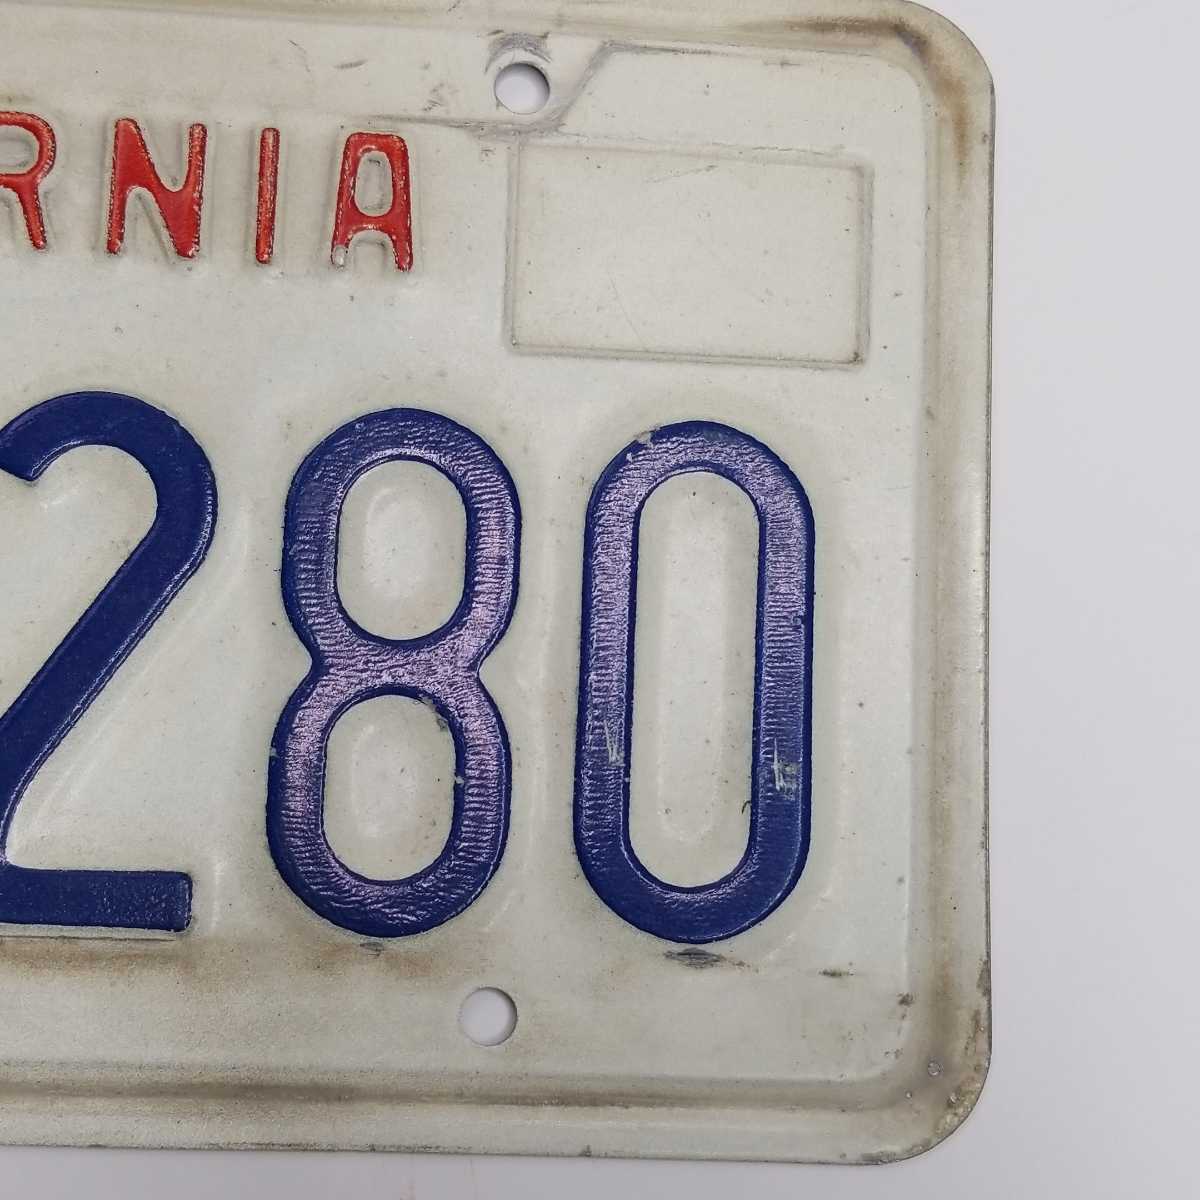  California номерная табличка America 3Z24280 гараж Cafe балка интерьер украшение 